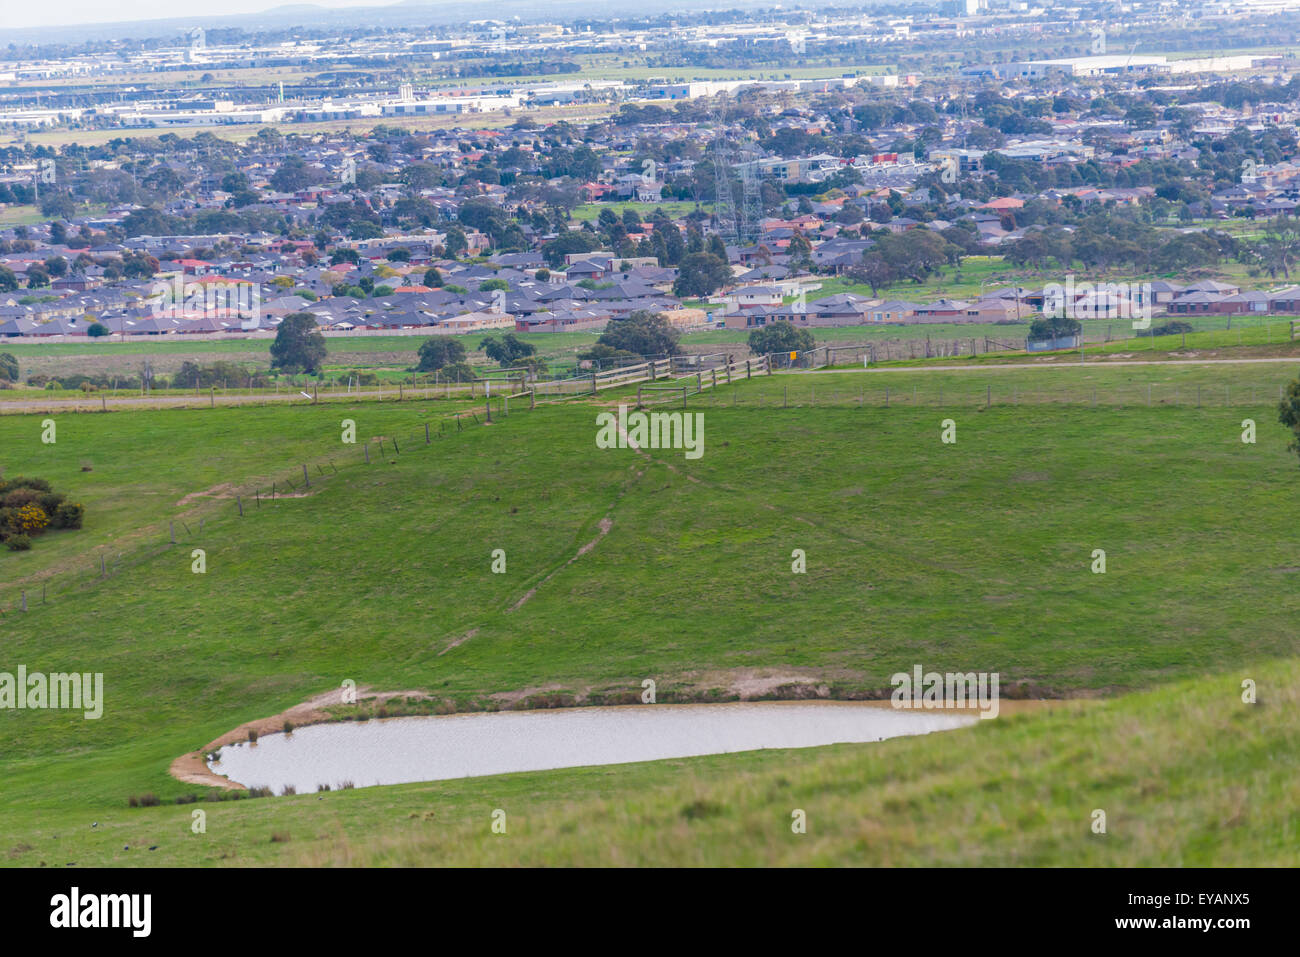 Melbourne periferia a distanza con i campi e terreni agricoli a ribalta con una diga waterhole. contrasto e sviluppo Foto Stock